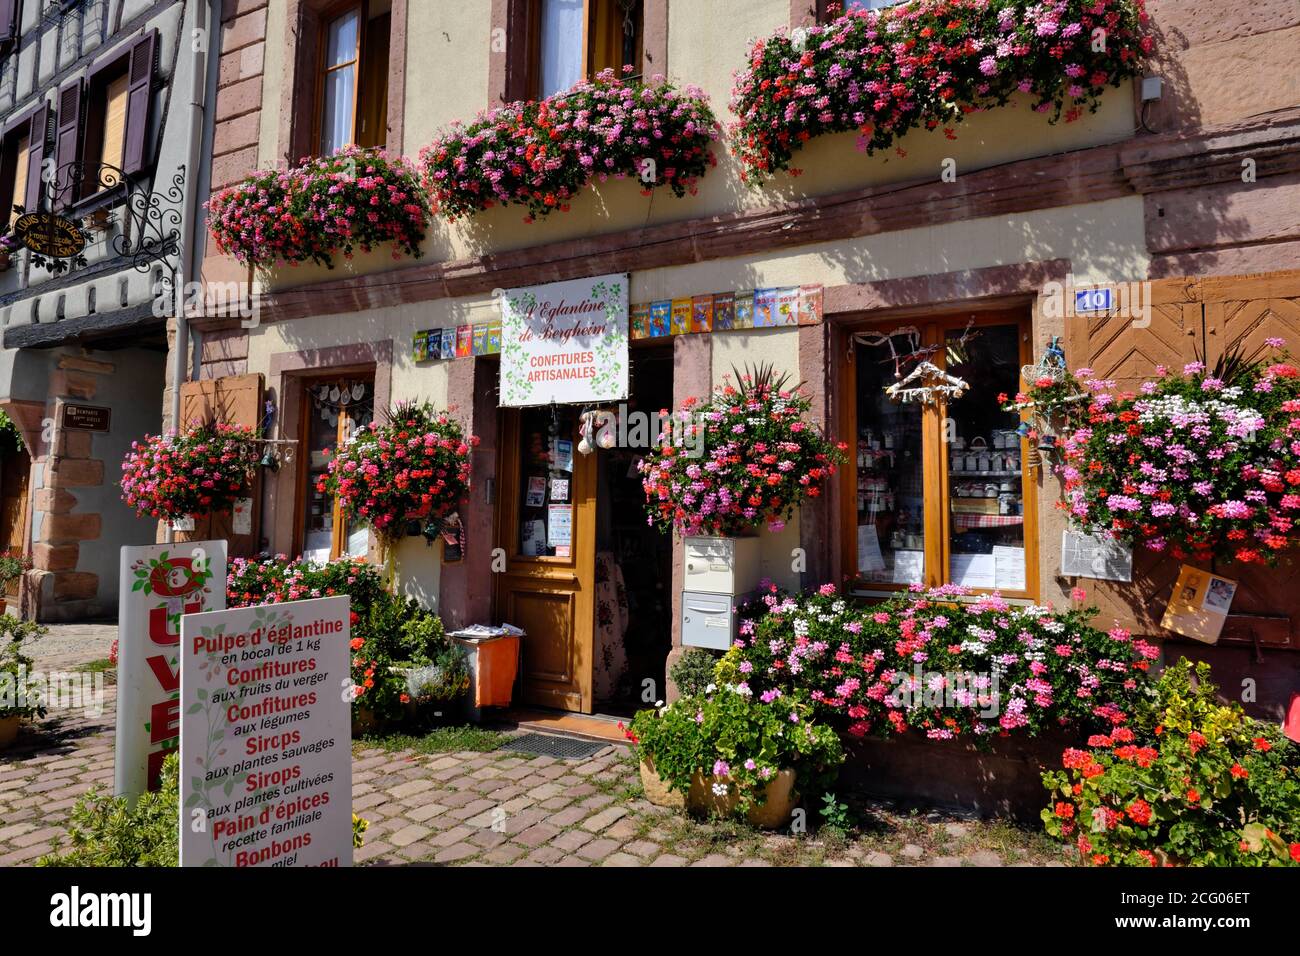 France, Haut Rhin, Bergheim, Place du Dr Pierre Walter, L Eglantine de Bergheim, grocery store, homemade jams, shop facade, flowers, geranium Stock Photo